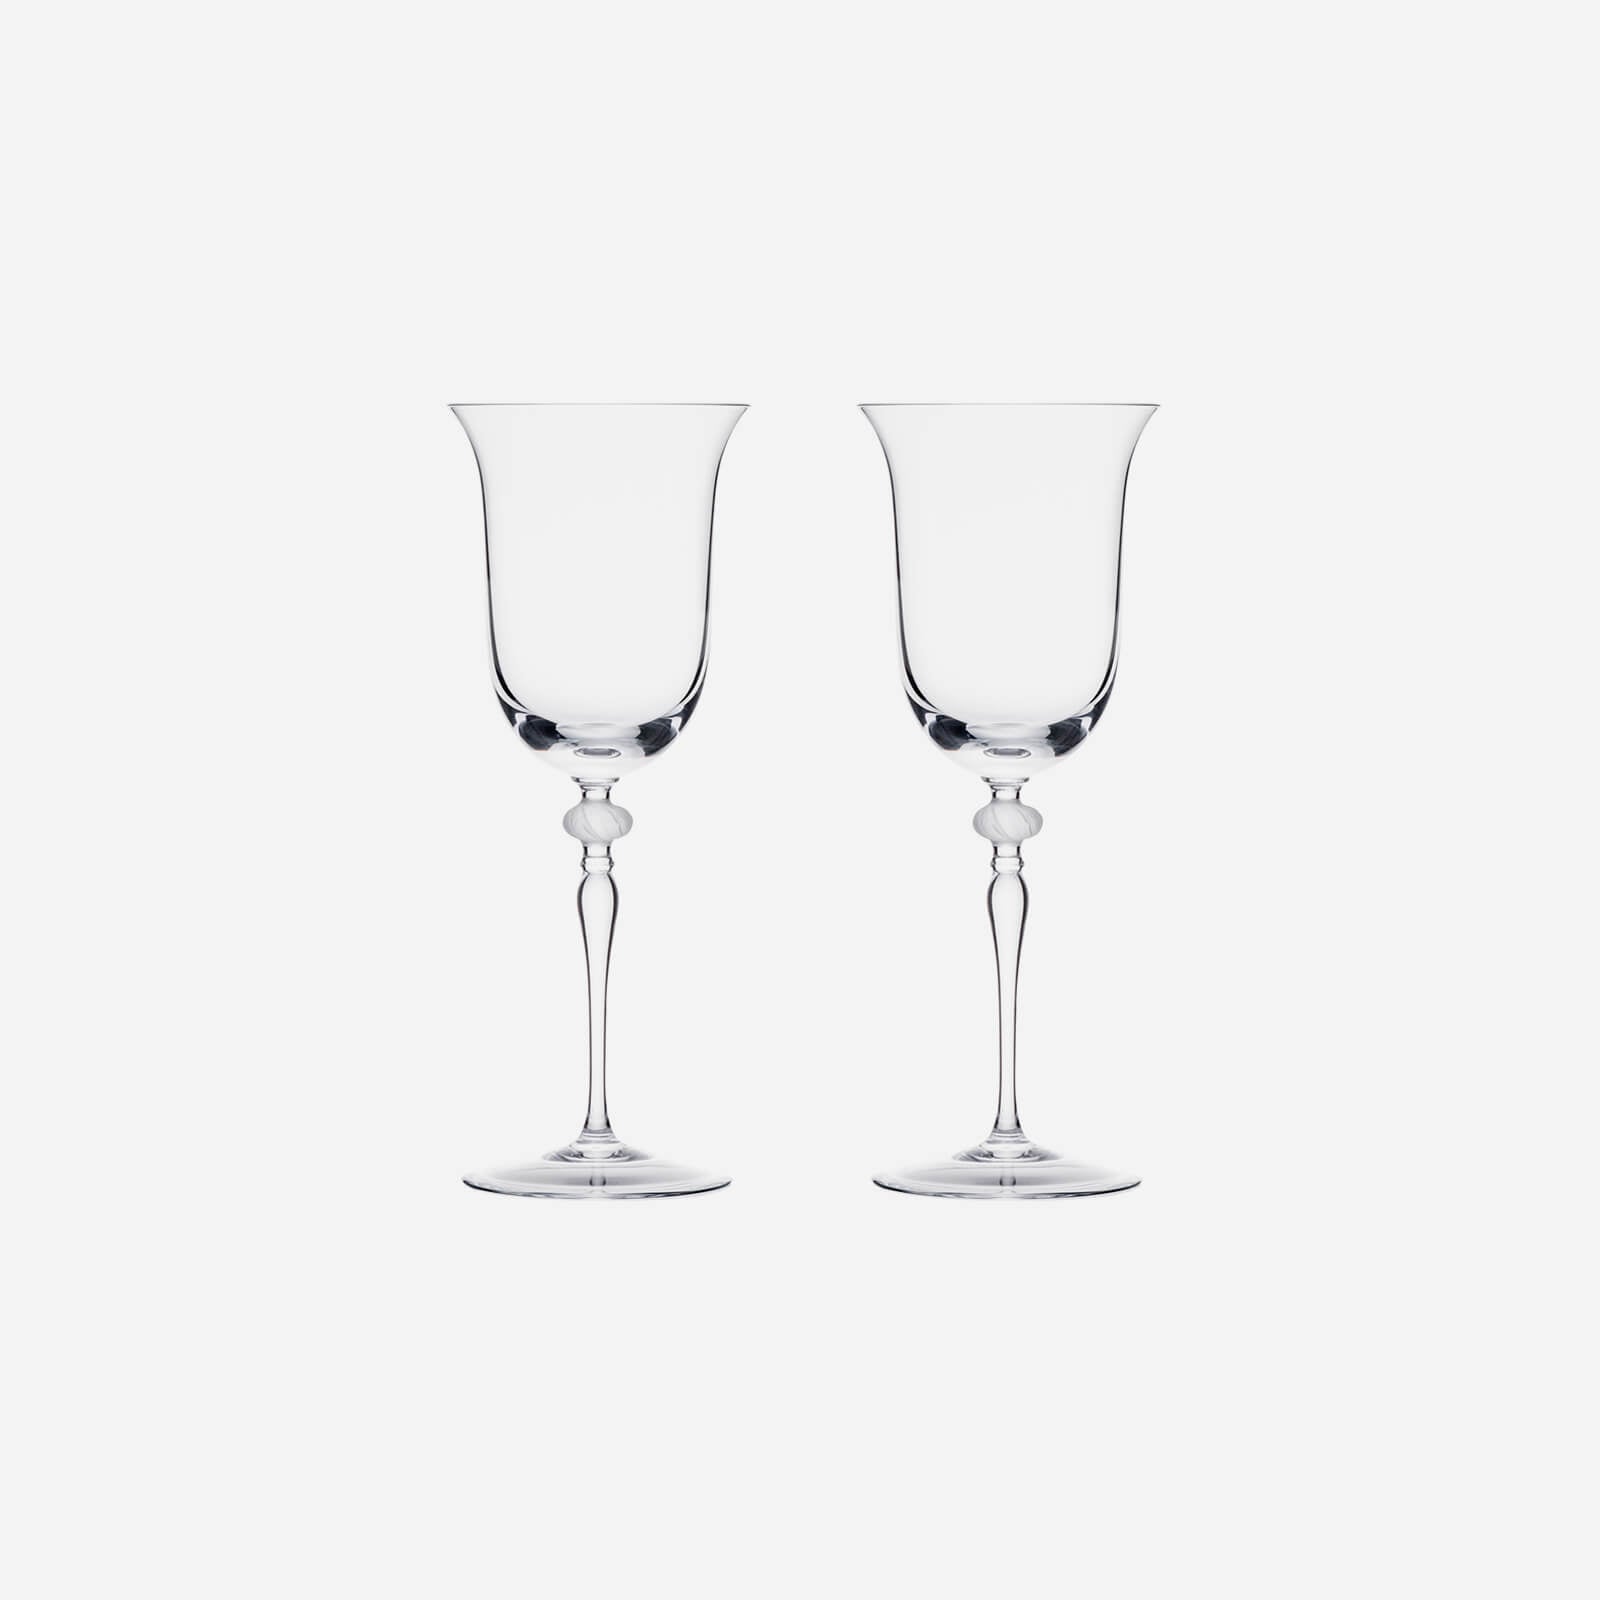 Crystal Wine Goblets (GL-007)